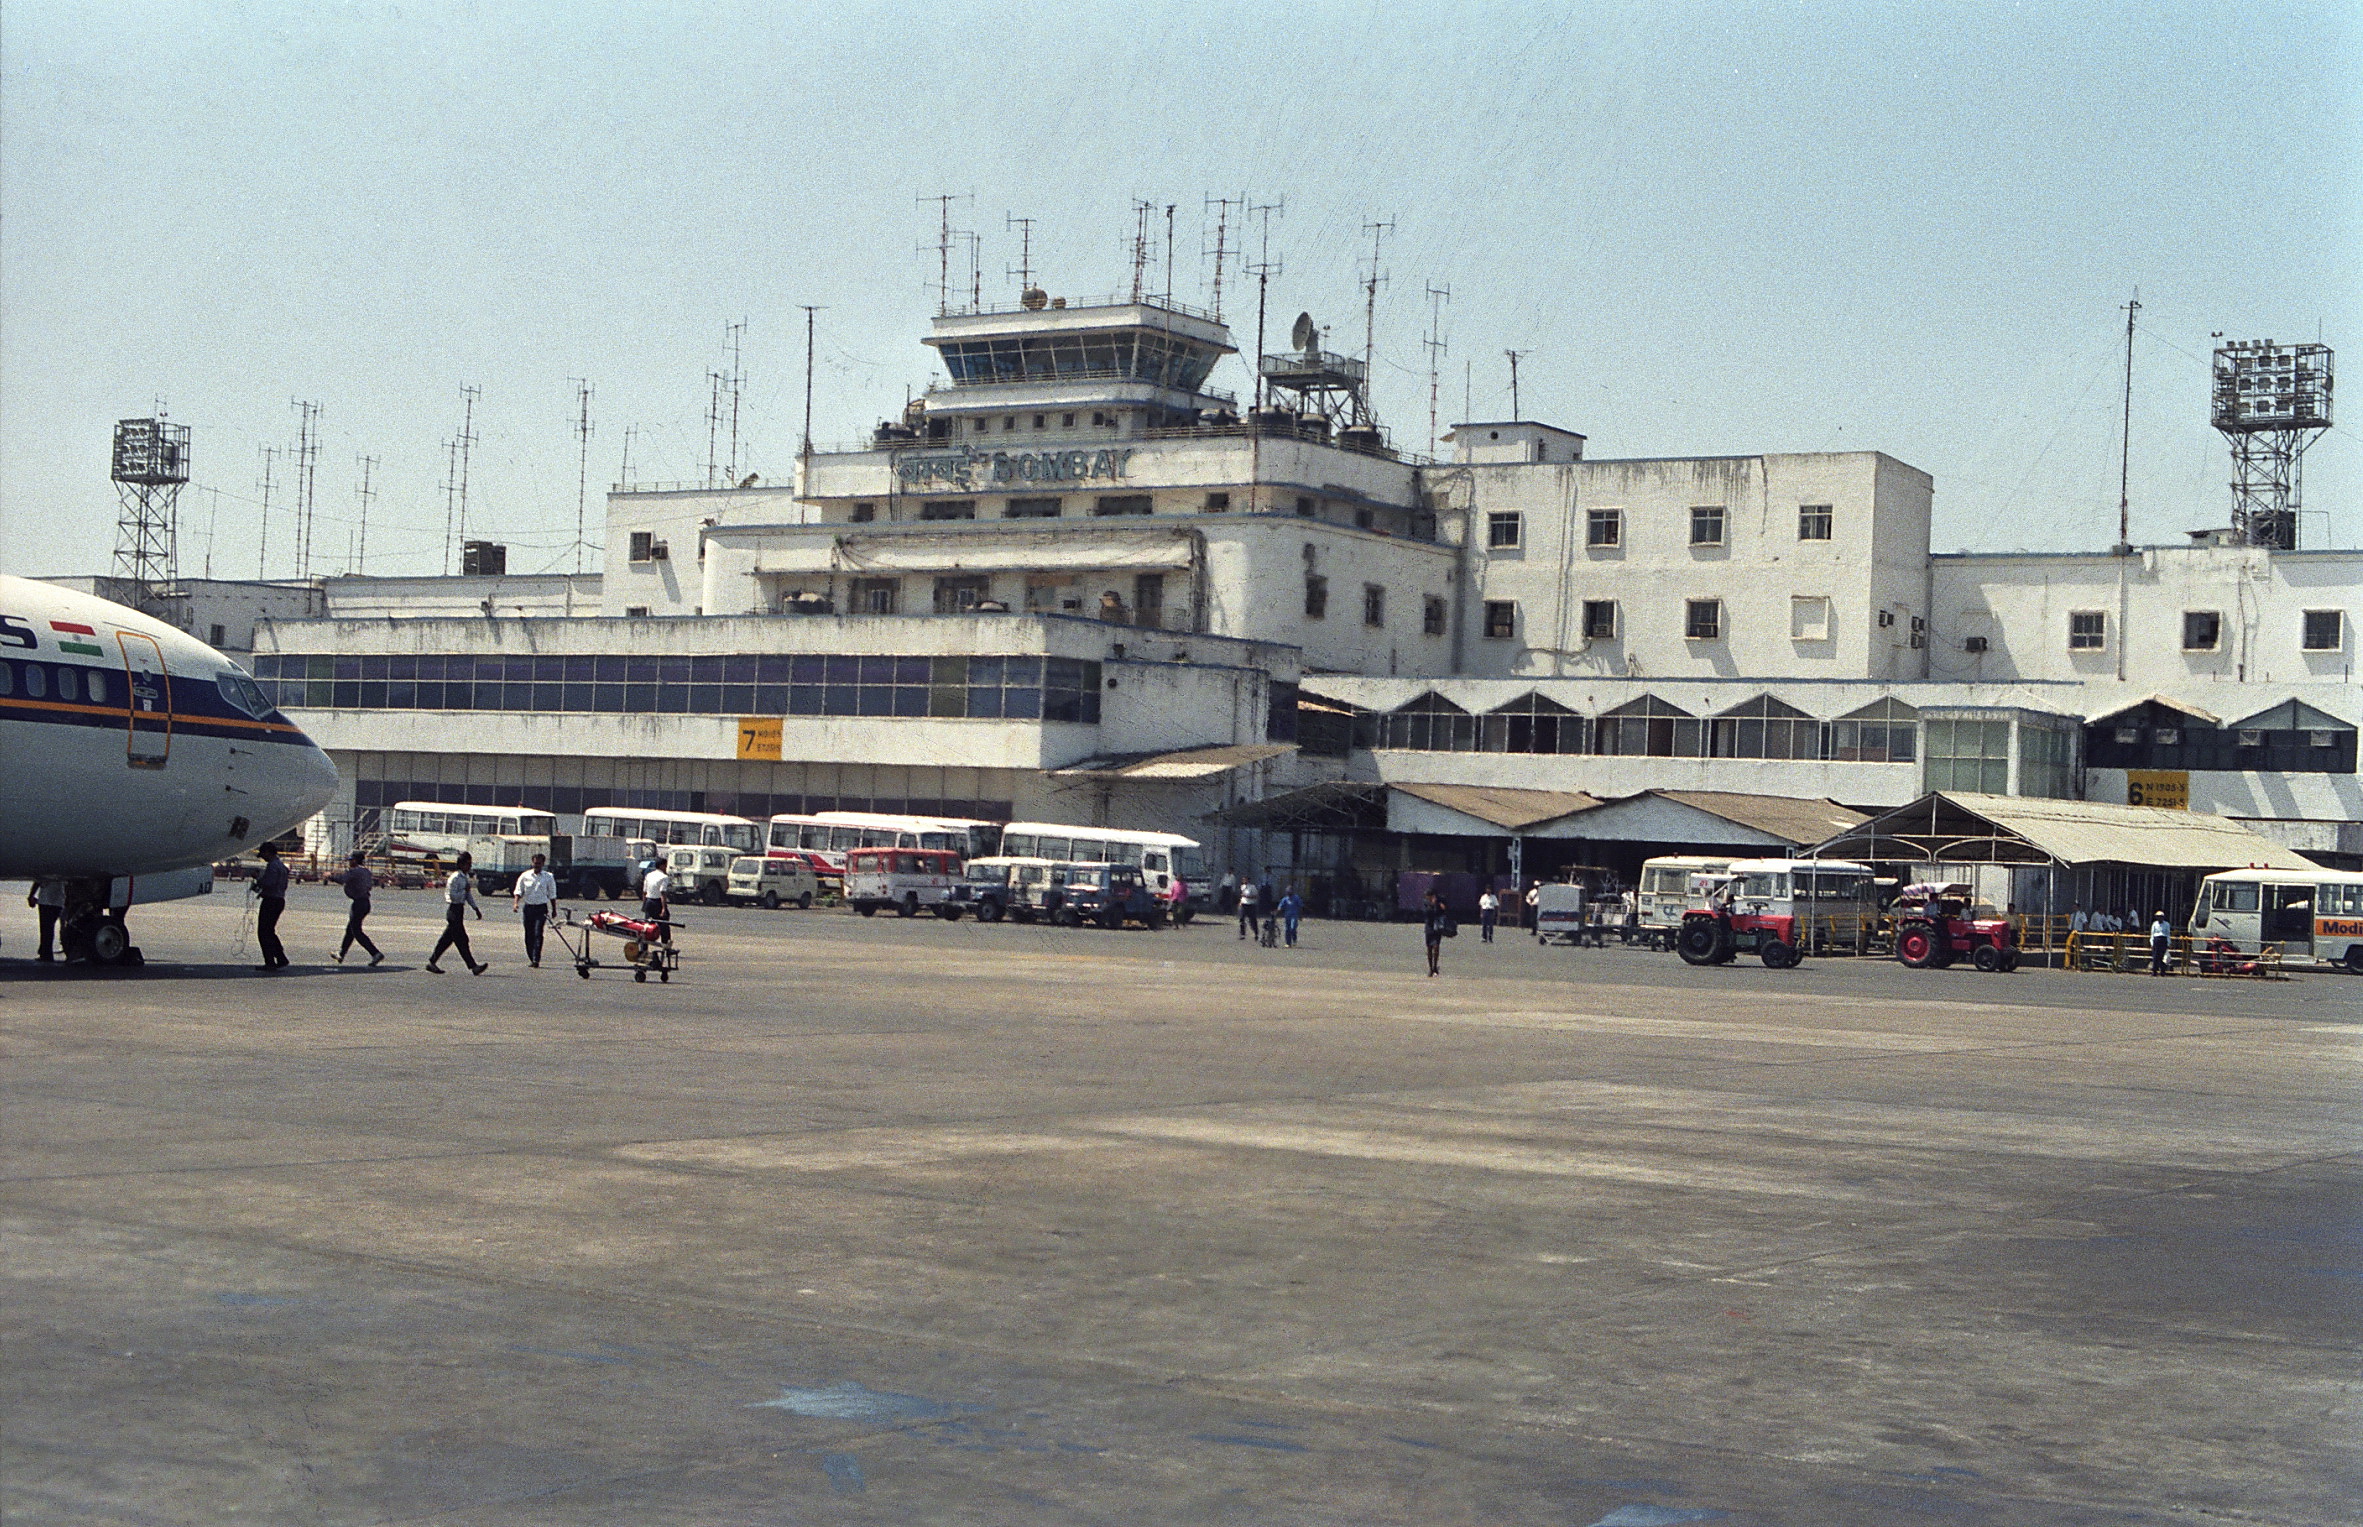 santacruz airport in 1994